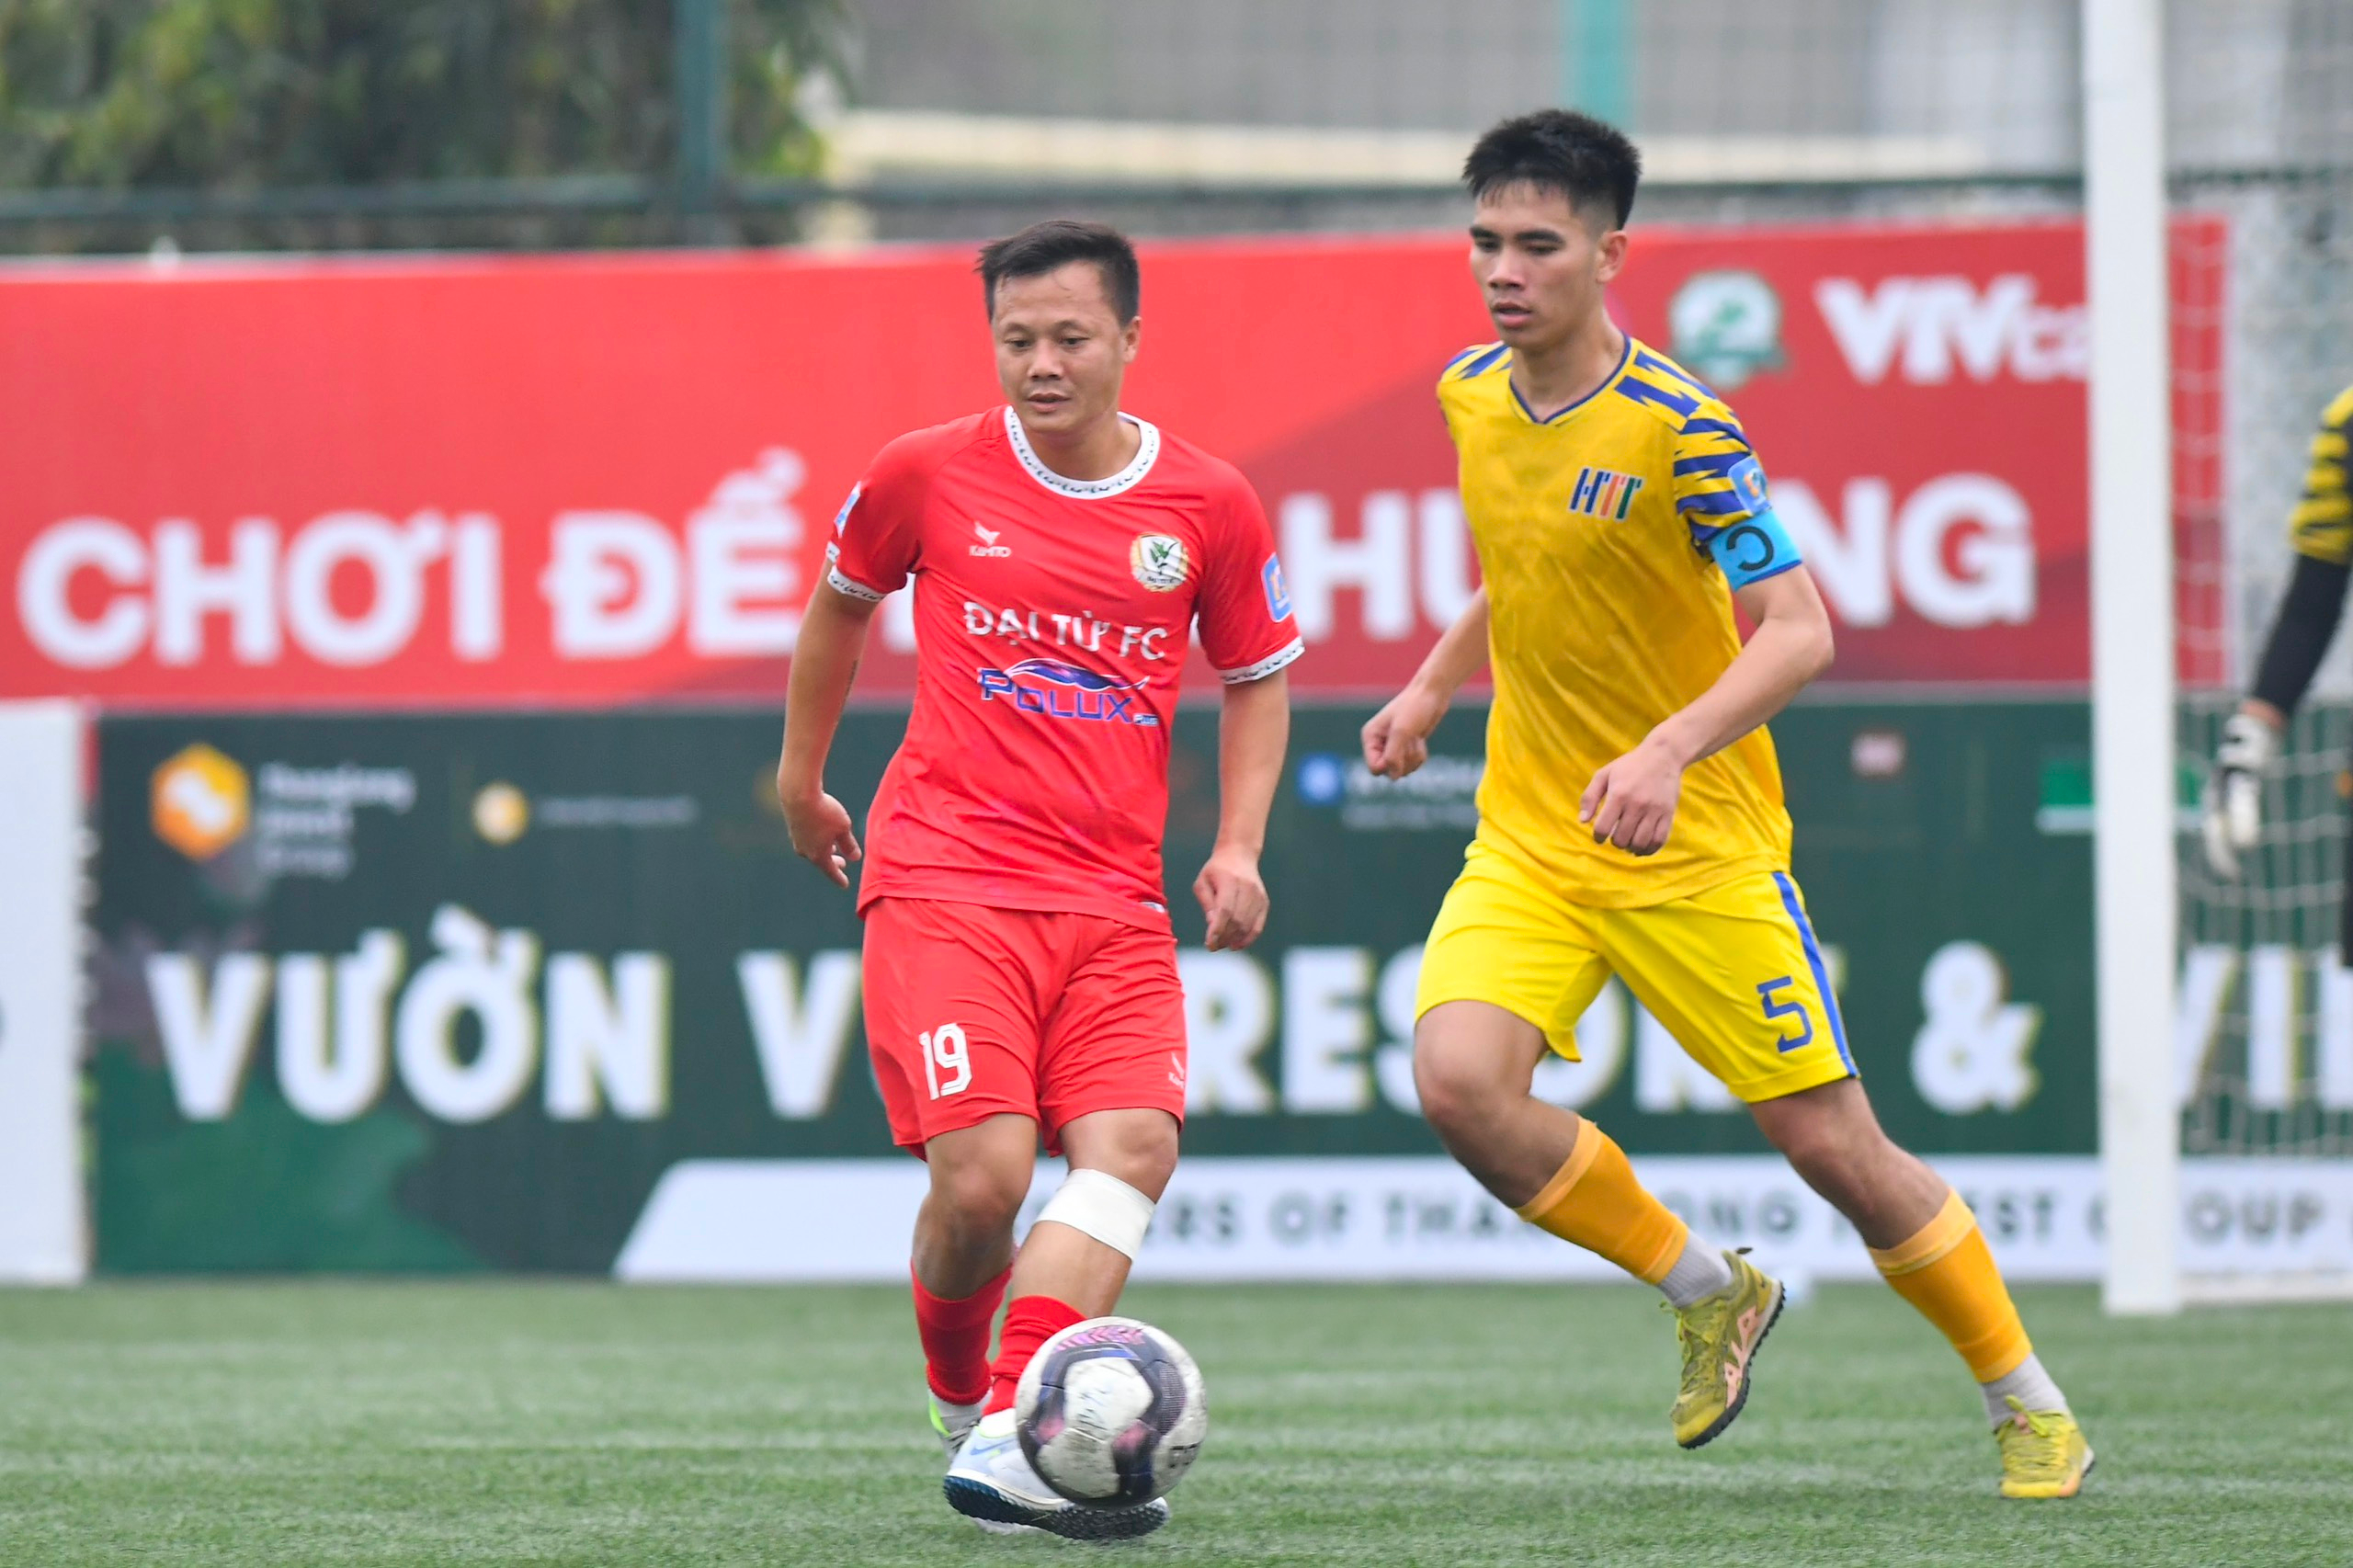 Tranh thủ ngày nghỉ, không phải tập luyện, Thành Lương ra sân khoác áo Đại Từ chơi ít phút hiệp 2 ở trận khai màn giải hạng Nhất Cúp VietFootball 2023 - Ảnh: Đức Cường 